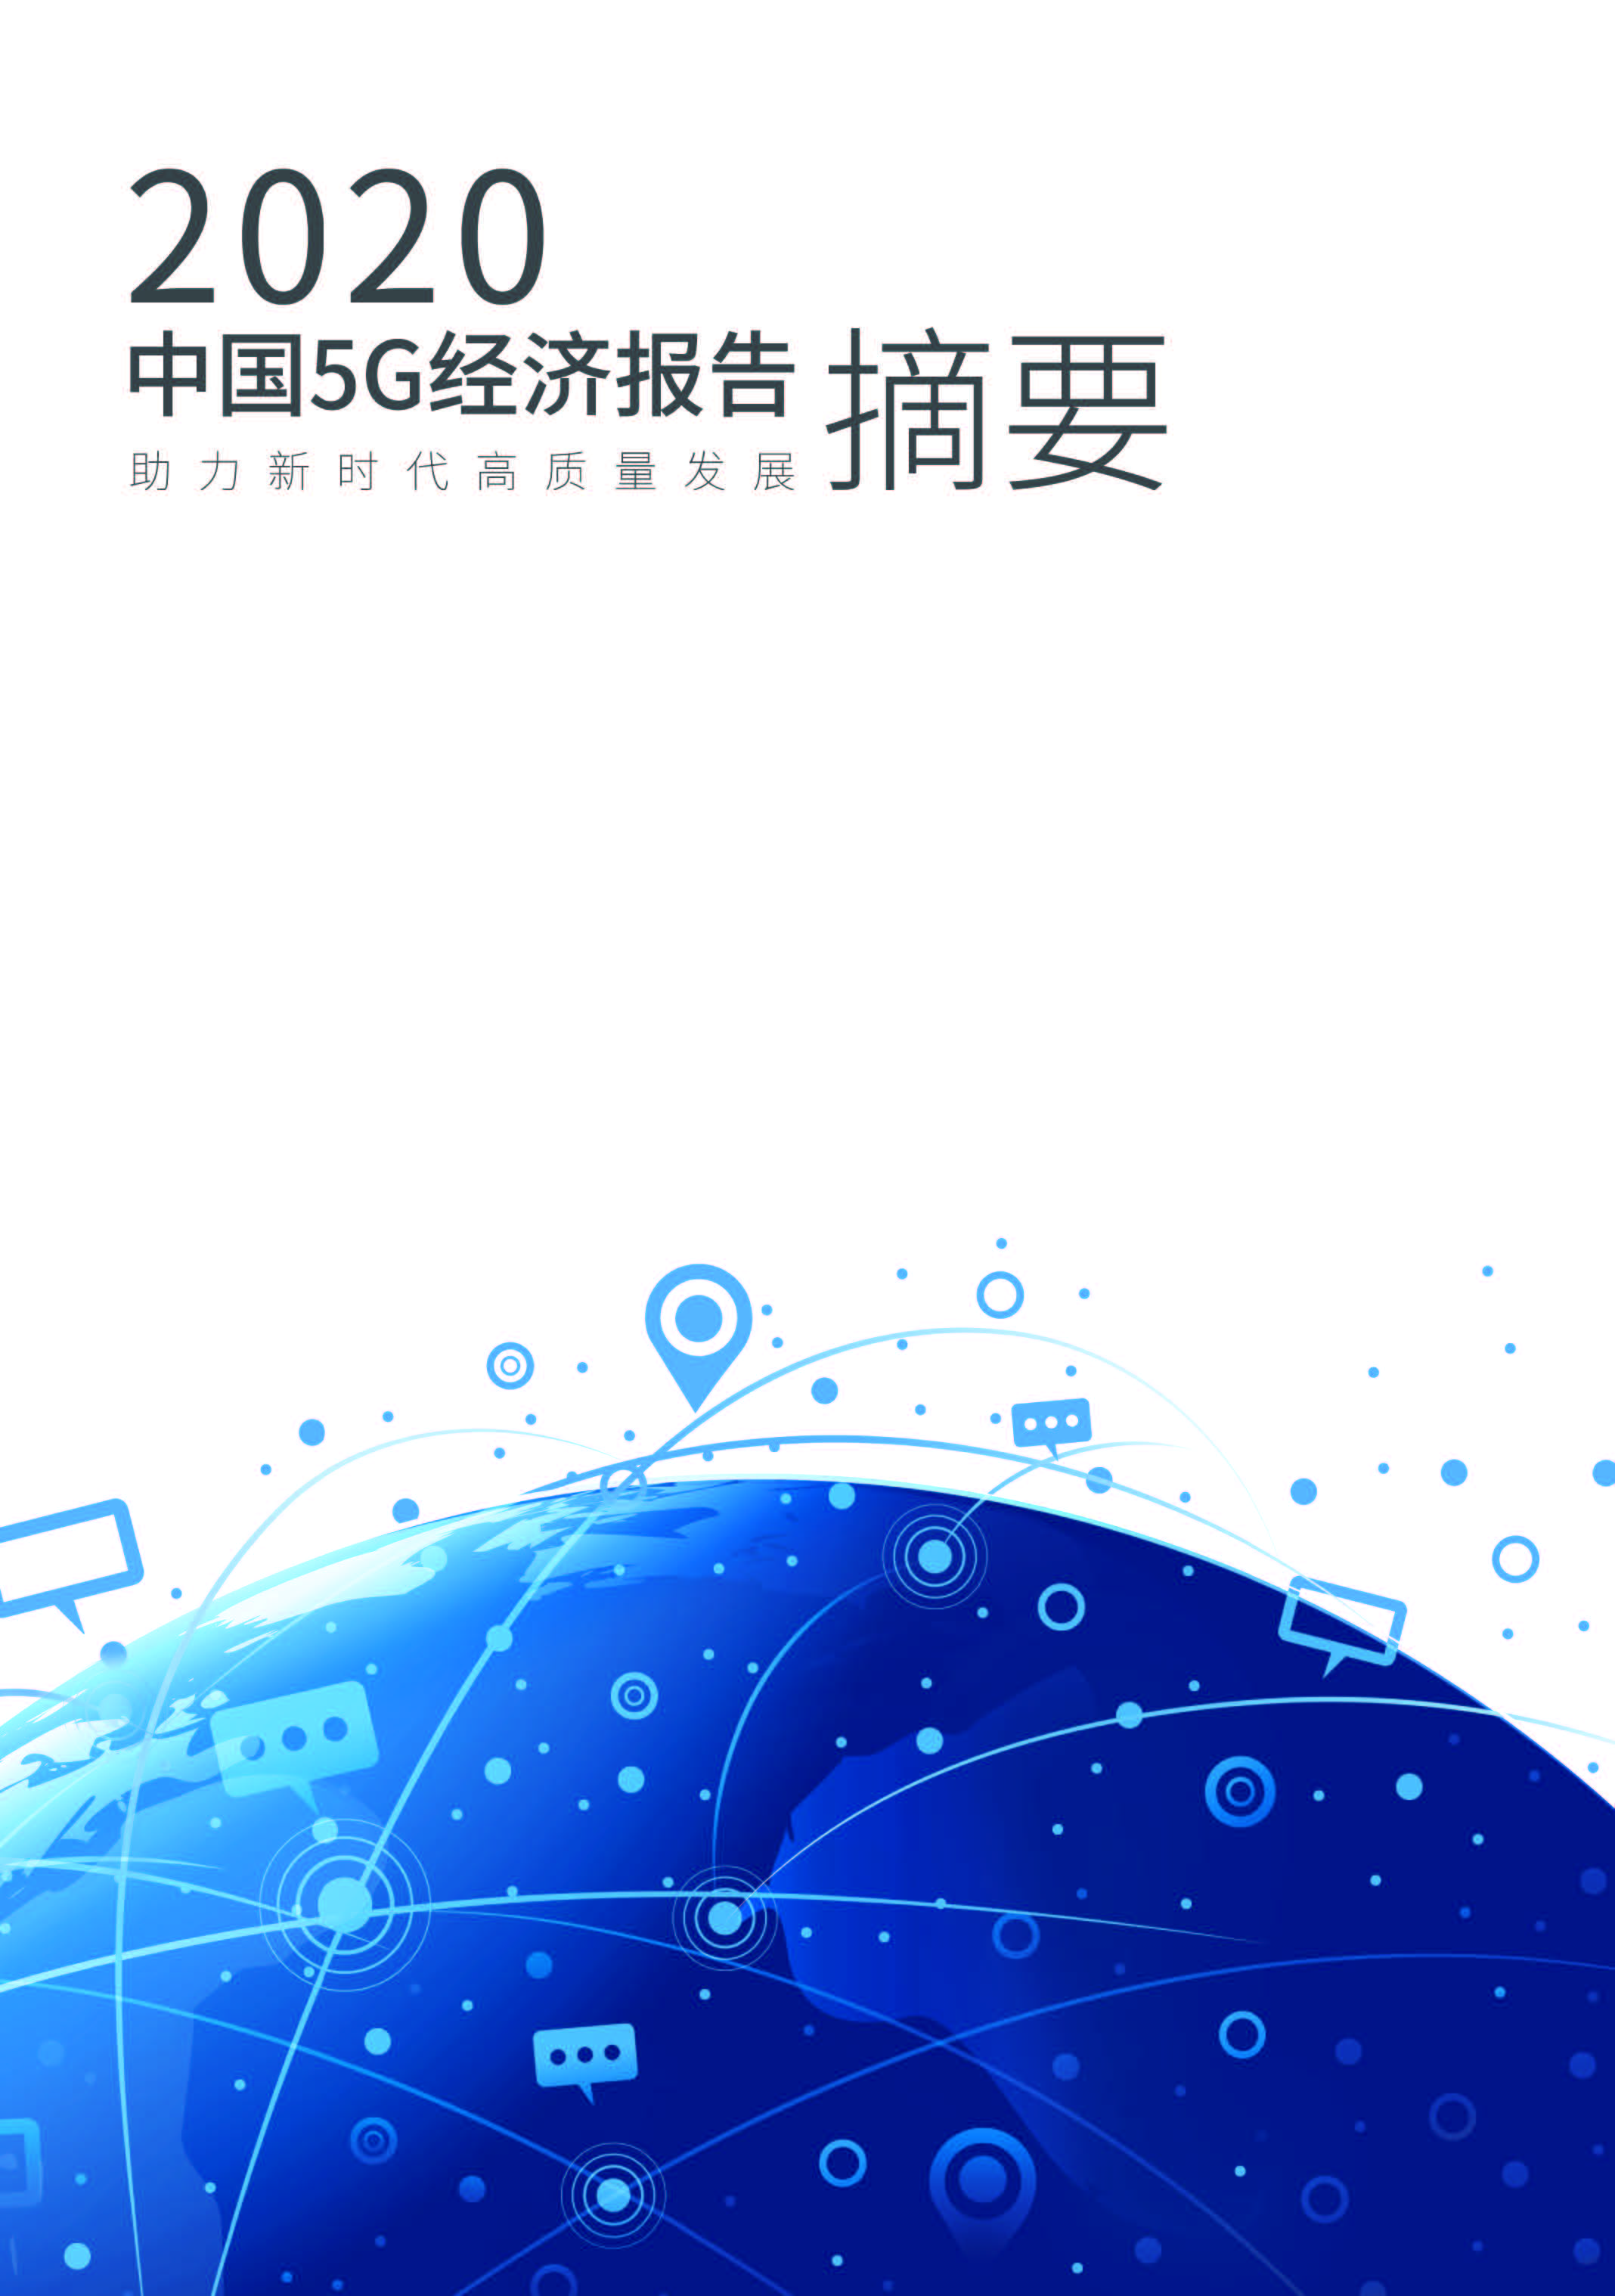 助力新时代高质量发展《中国5G 经济报告2020》摘要